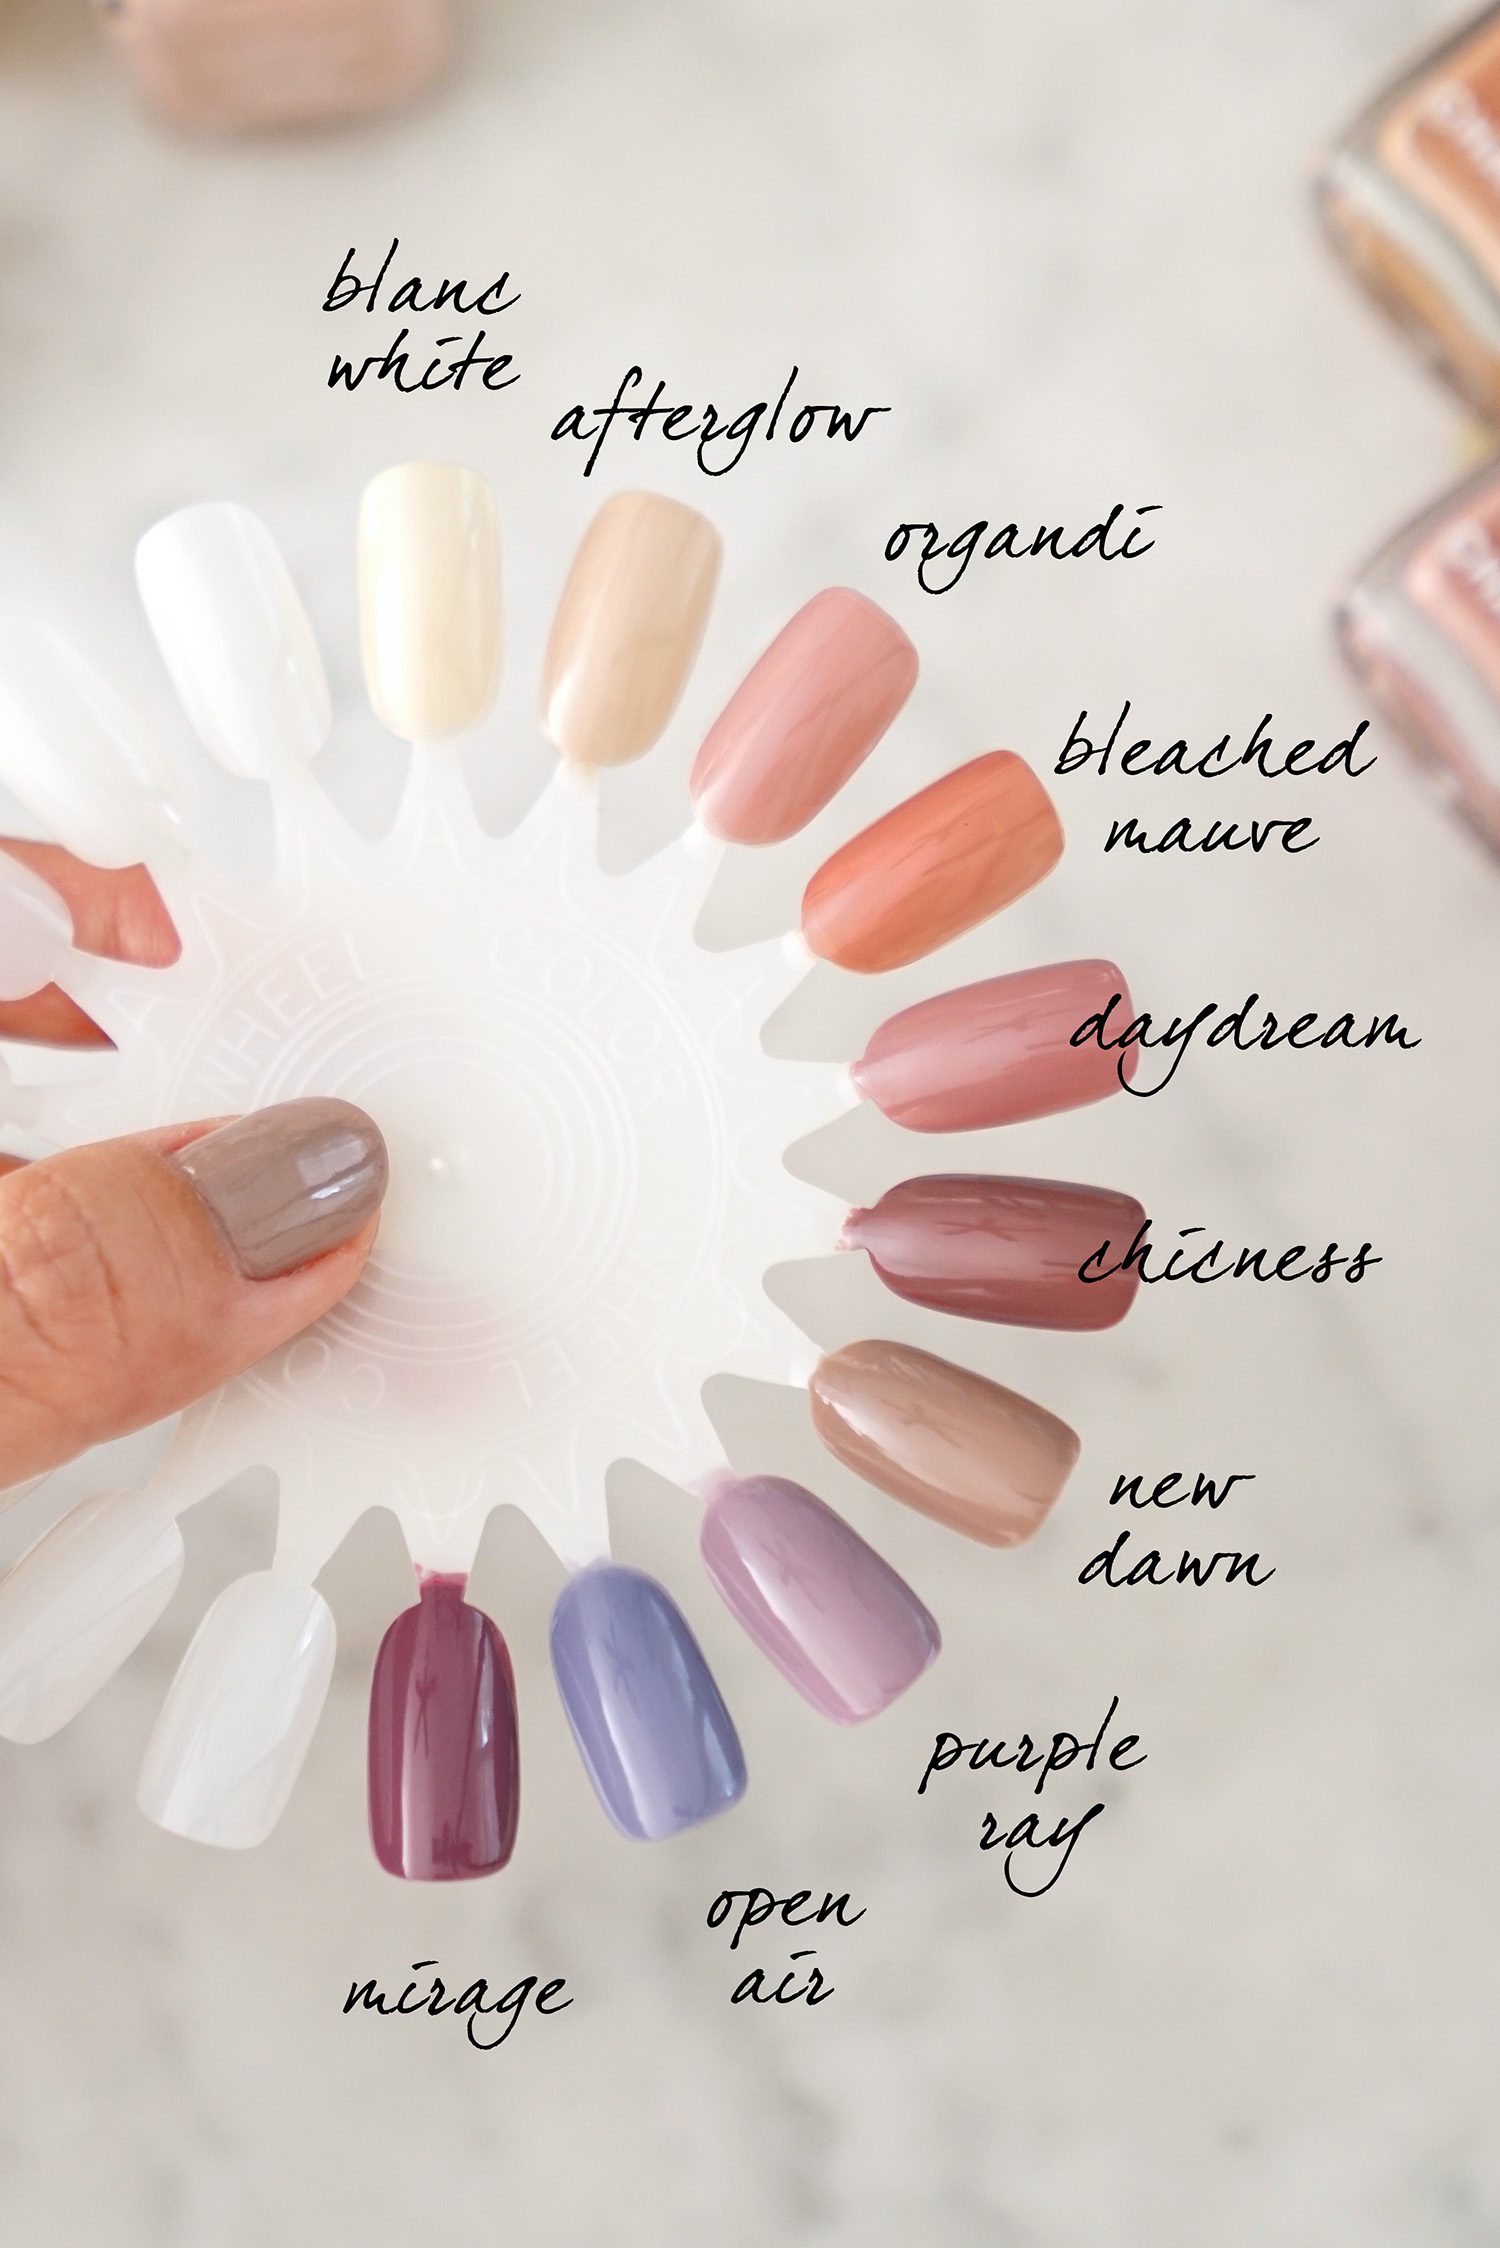 chanel nail polish colors